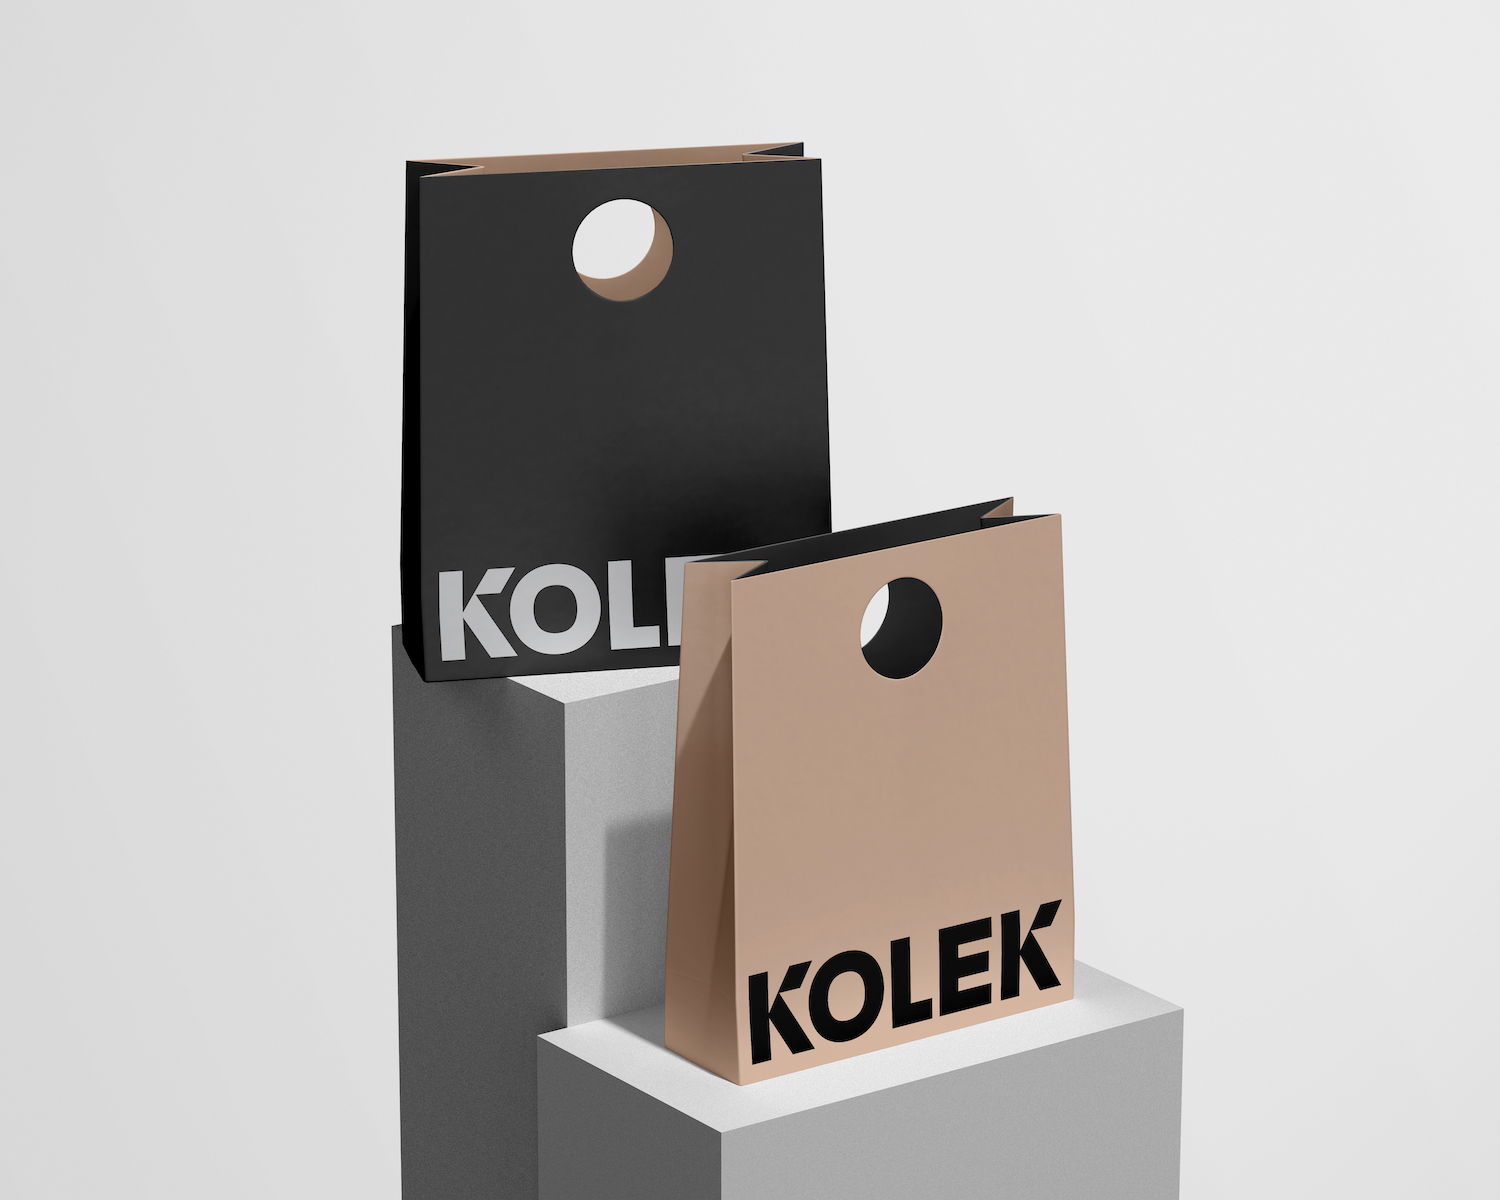 瓷砖品牌Kolek视觉VI设计